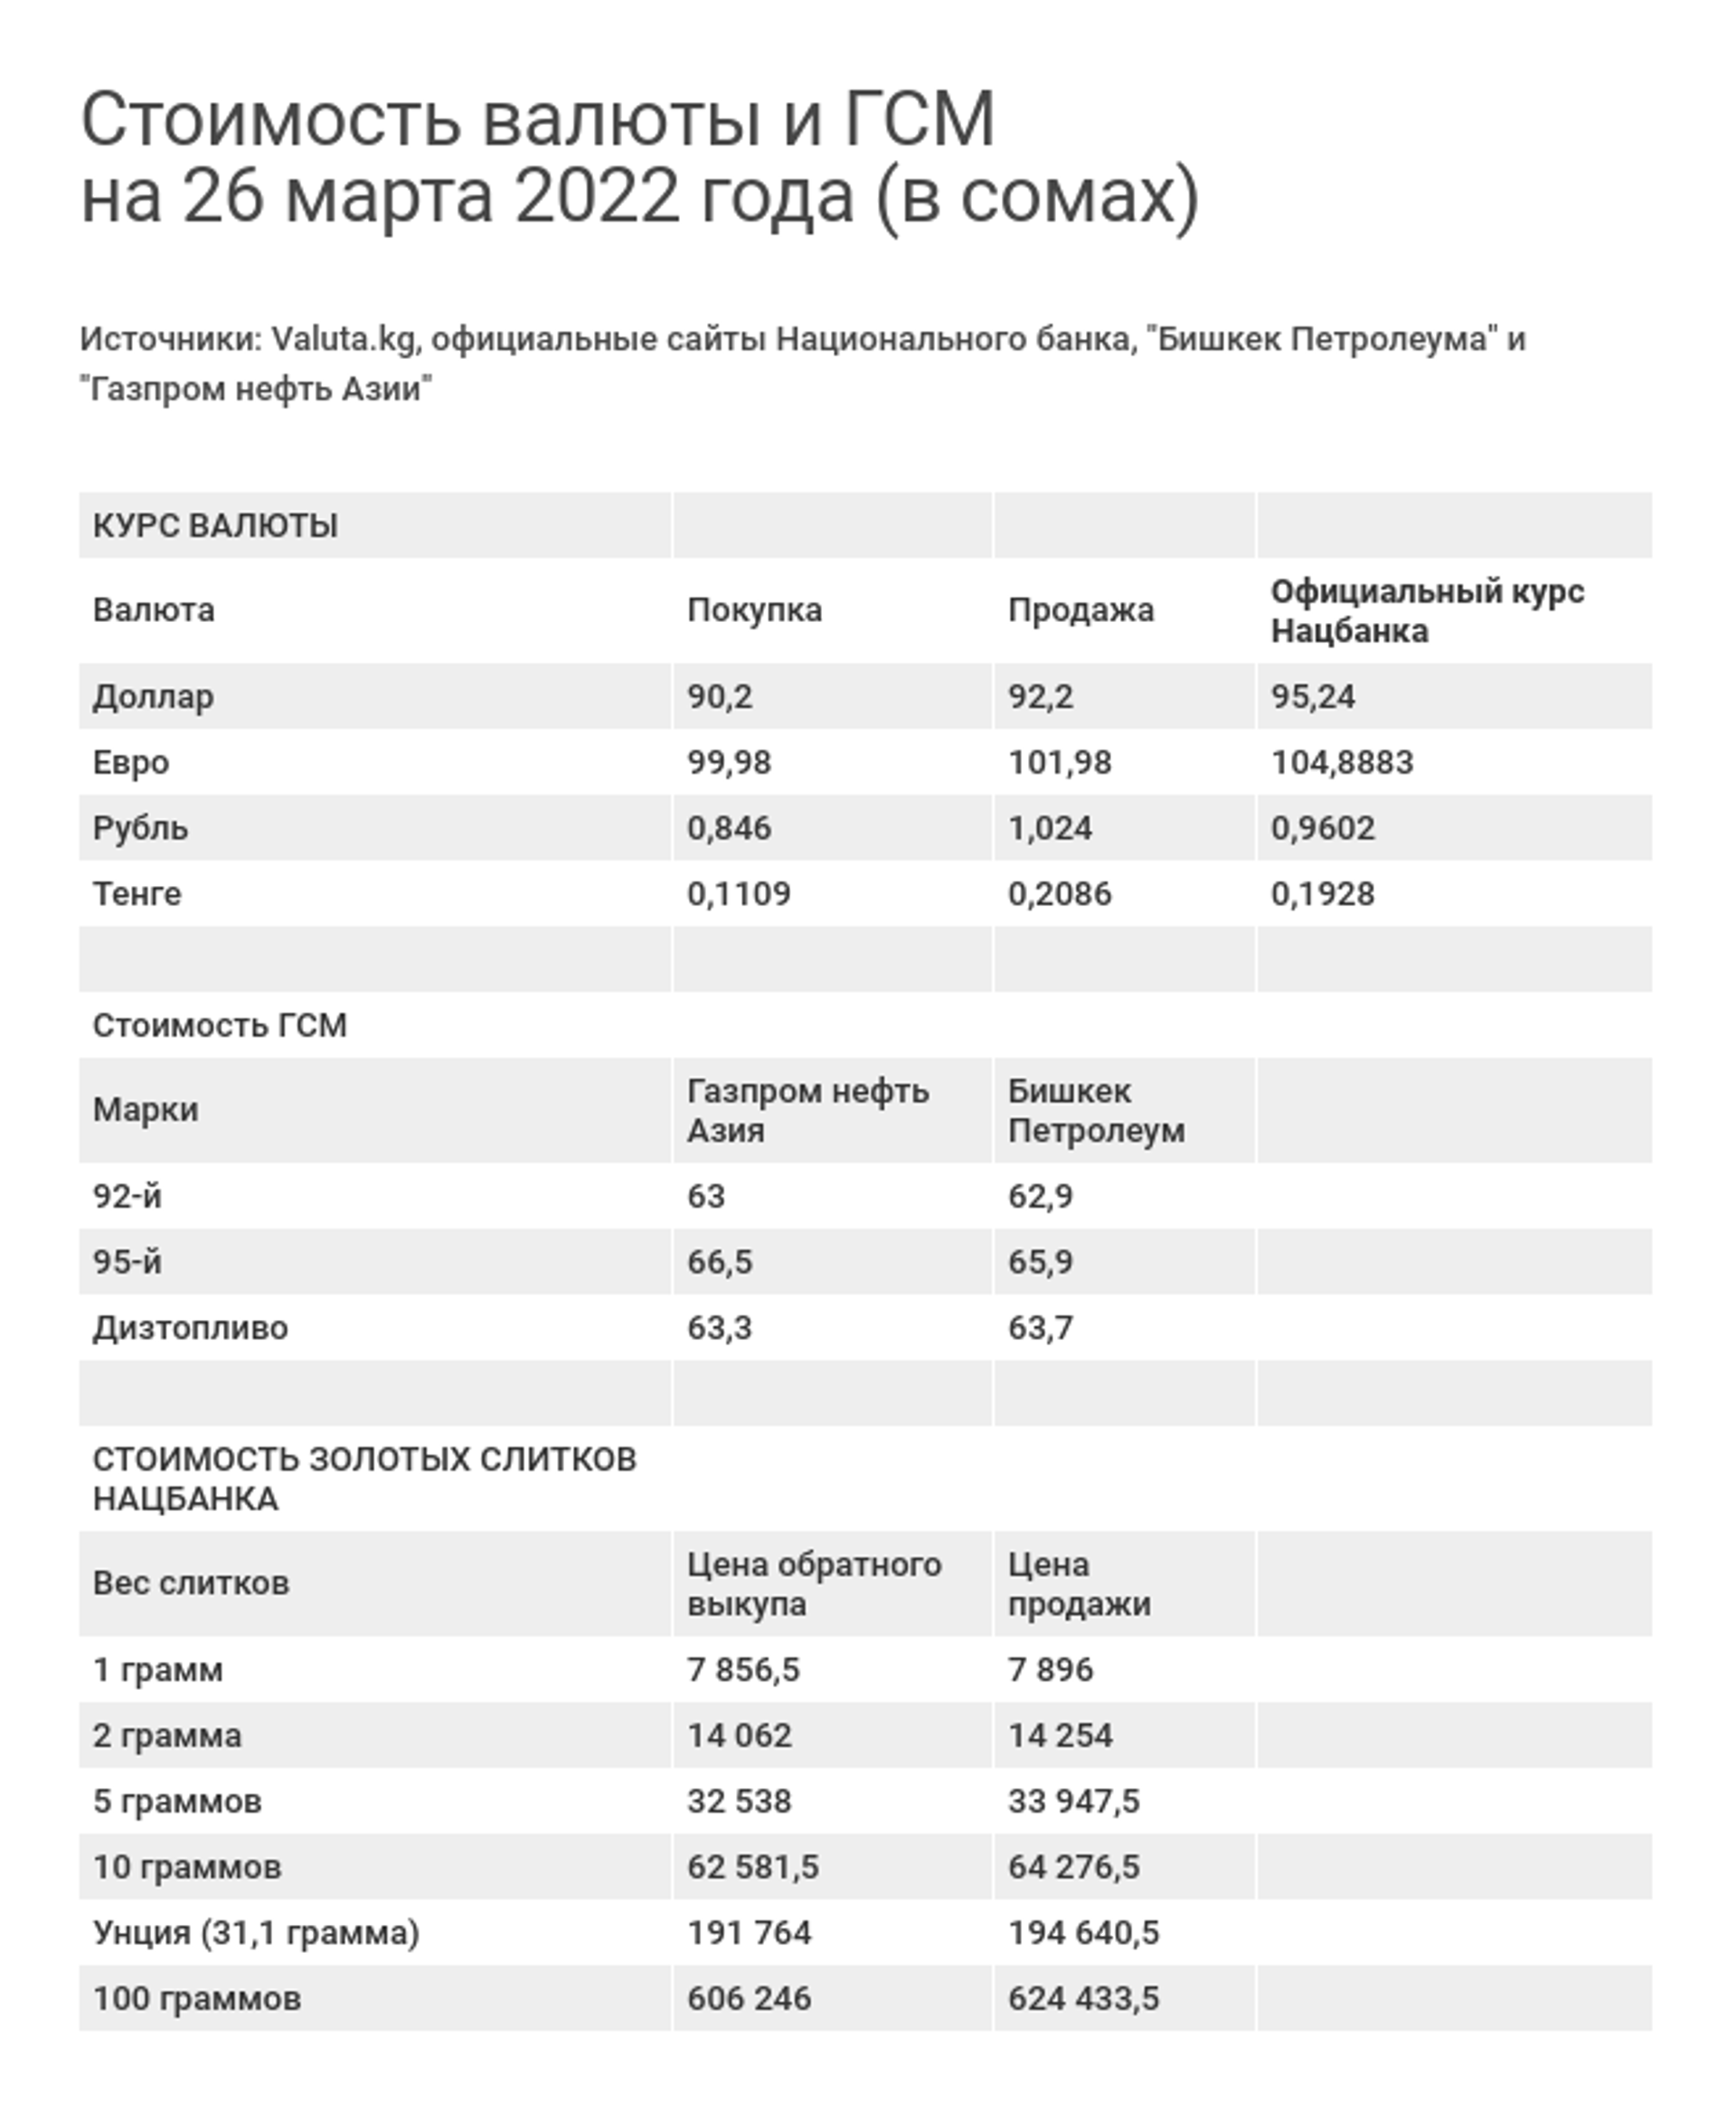 Стоимость валюты и ГСМ на 26 марта 2022 года (в сомах) - Sputnik Кыргызстан, 1920, 26.03.2022